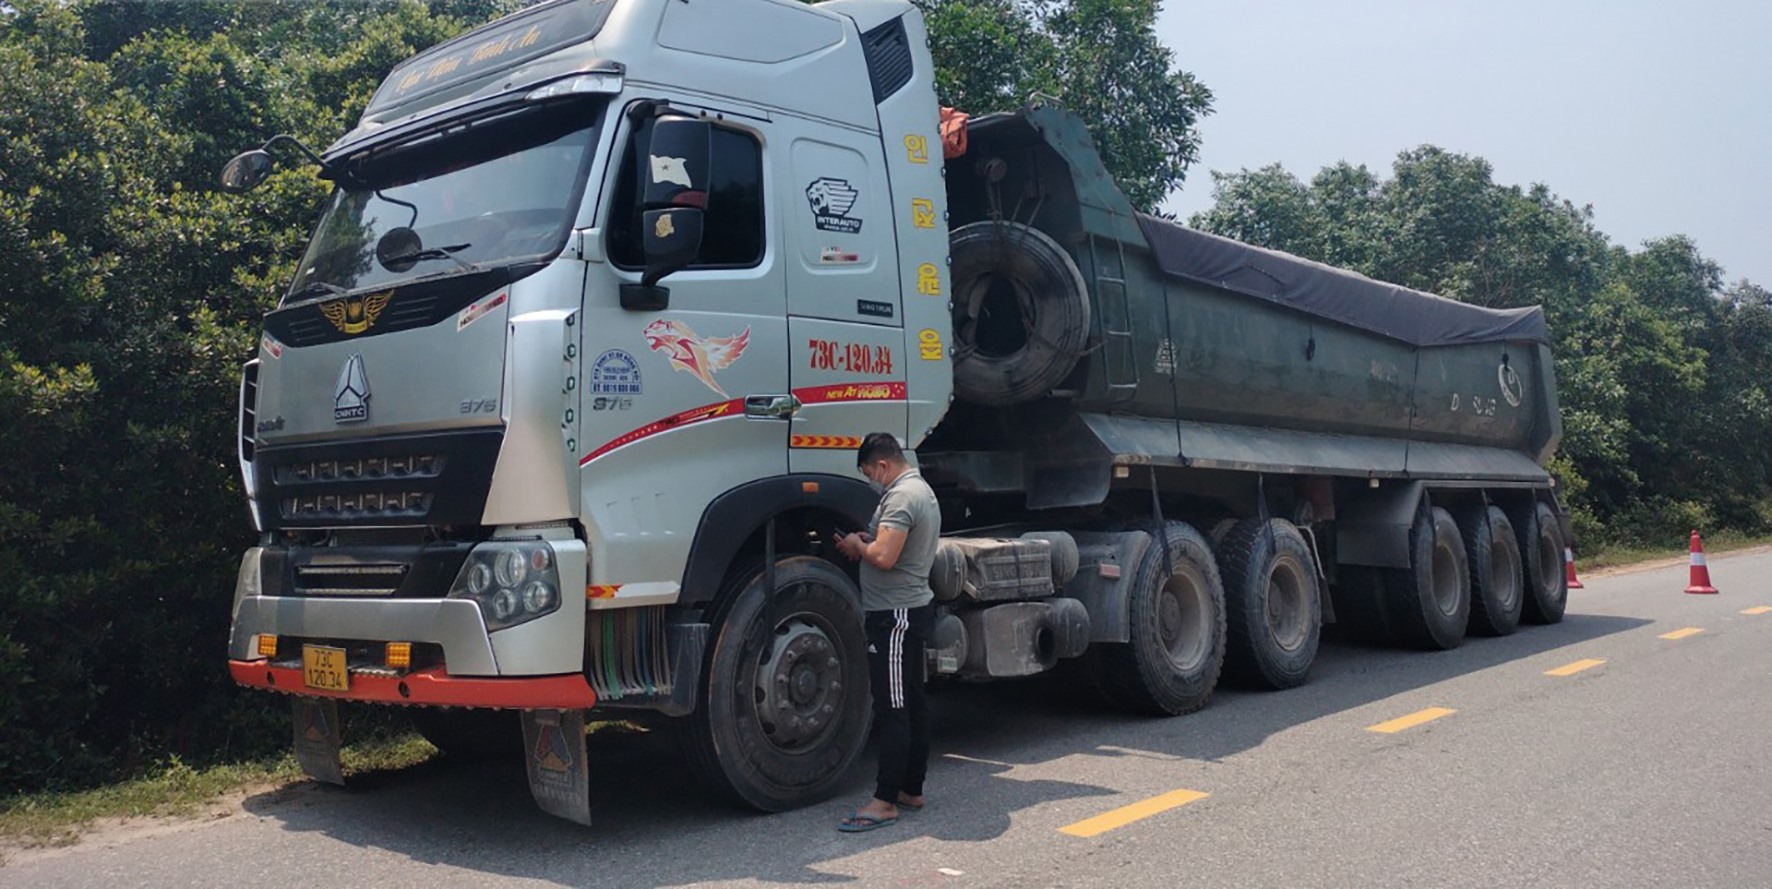 Ô tô tải biển kiểm soát 73C-120.34 kéo theo rơ moóc 73R-007.84 của Công ty TNHH TM&DV Thái Bình Minh chở vật liệu vượt quá tải trọng trục cho phép của đường hơn 40 % bị lập biên bản trên tuyến Quốc lộ 9D - Ảnh: L.T